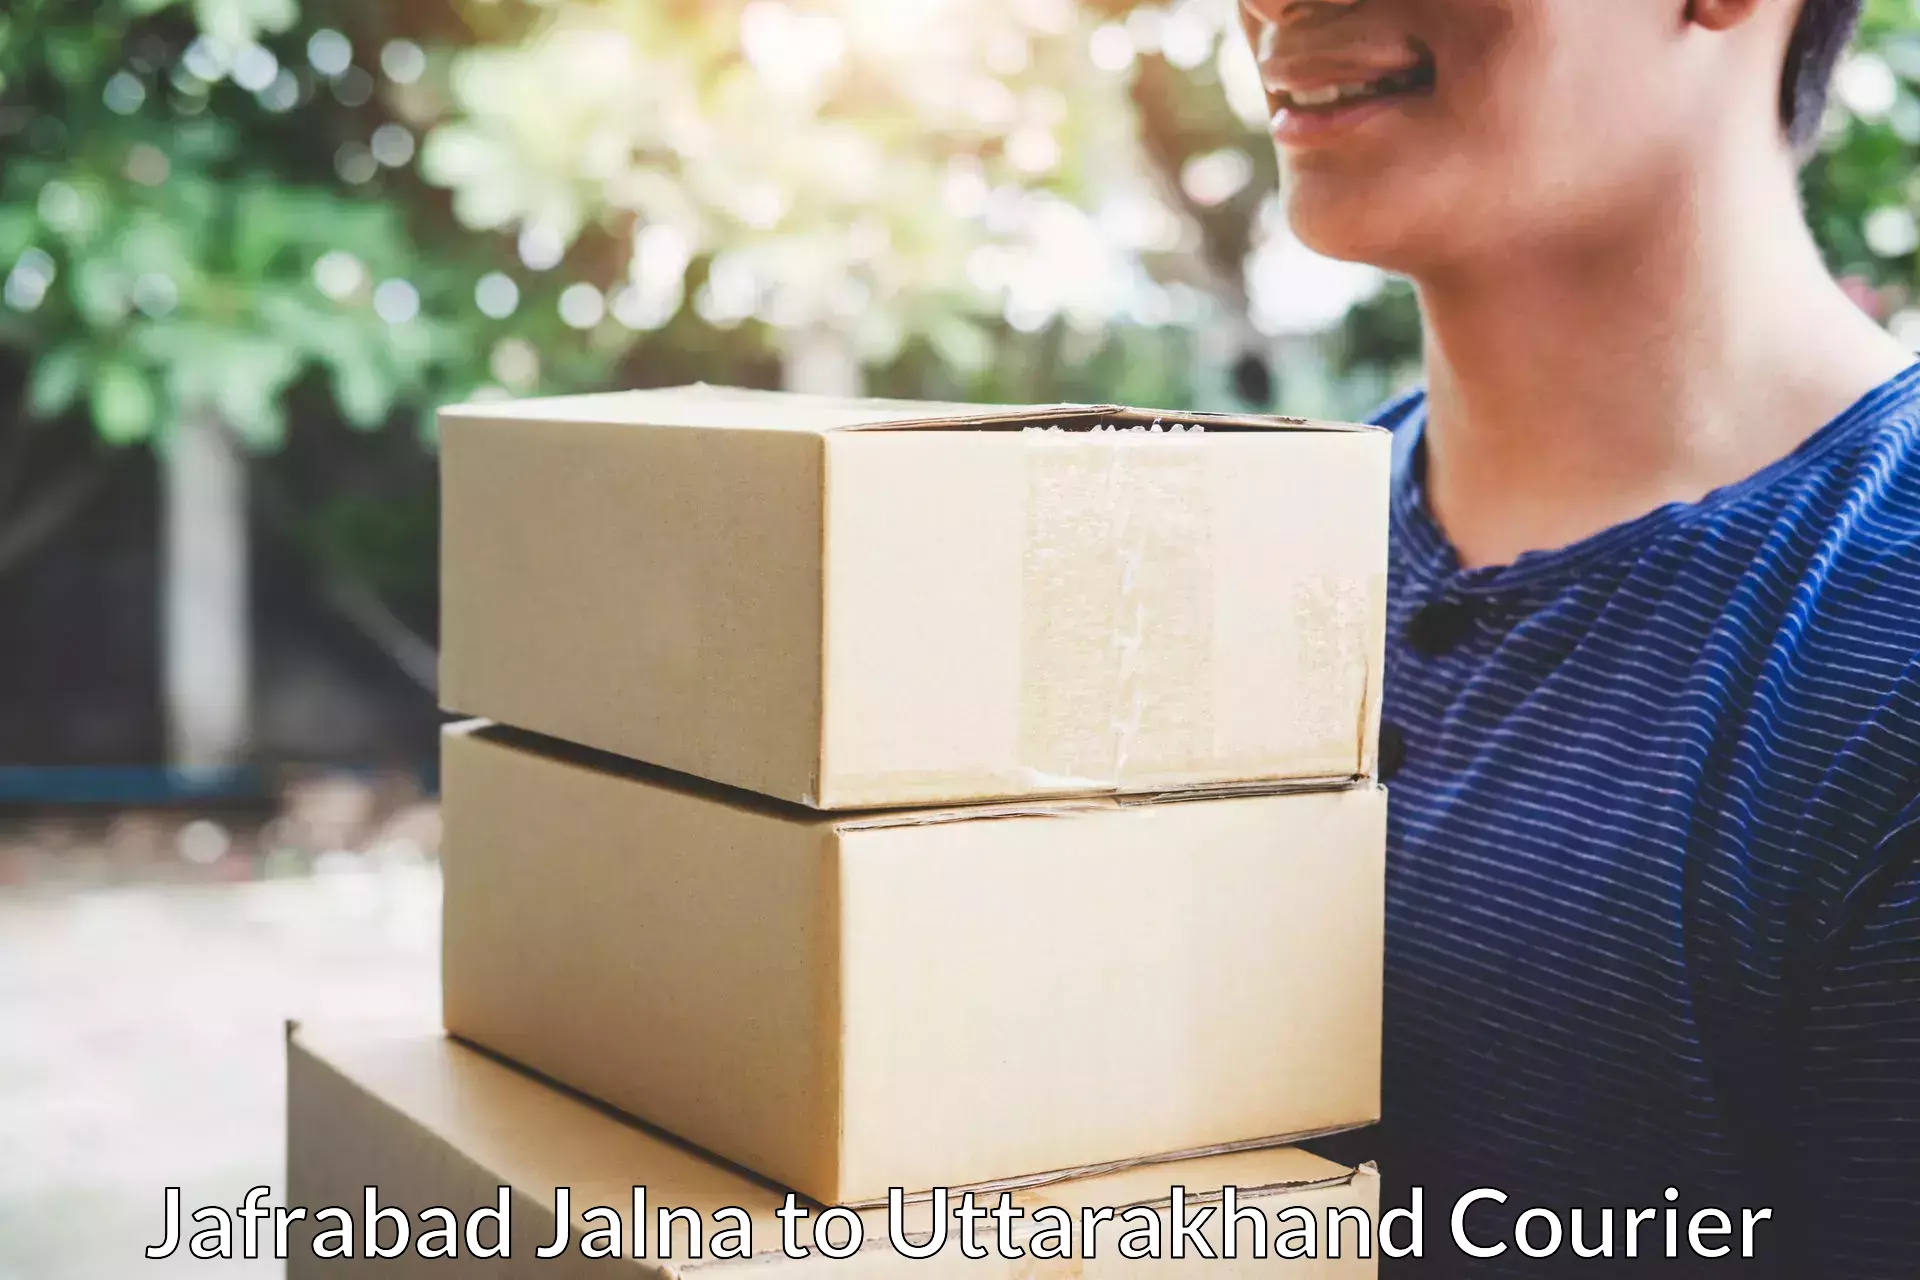 Safe furniture transport Jafrabad Jalna to Roorkee